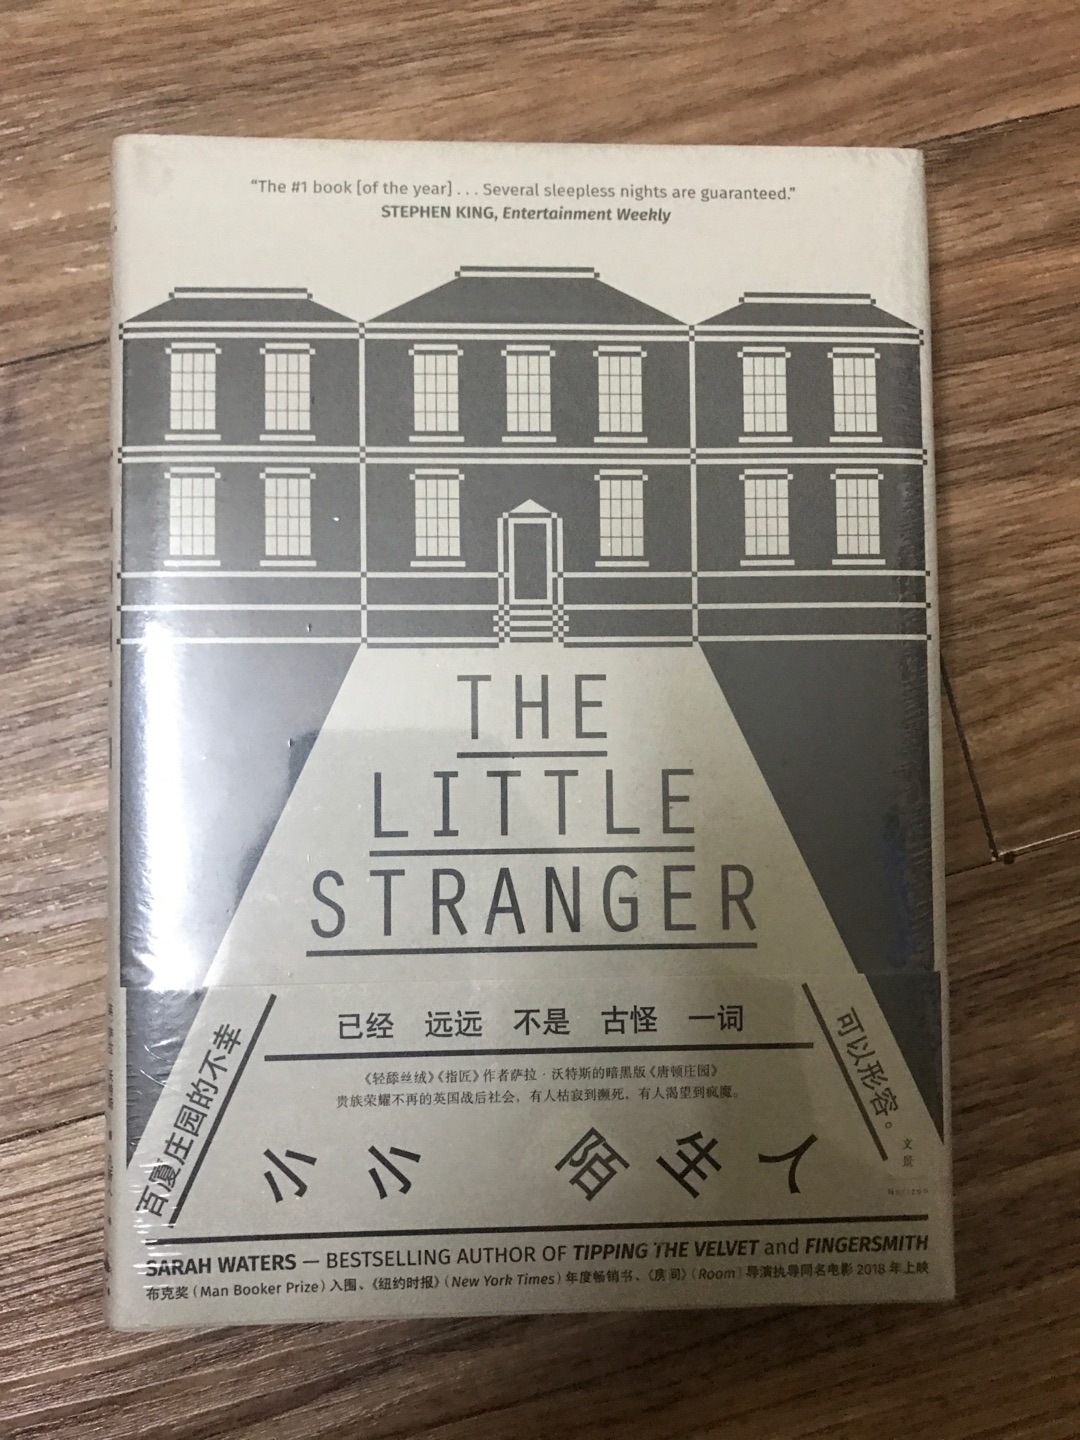 上海人民出版社出版的沃特斯作品《小小陌生人》，看了他的维多利亚三部曲后果断入坑这本，还有一本《房客》也很不从，这次也一并入了。